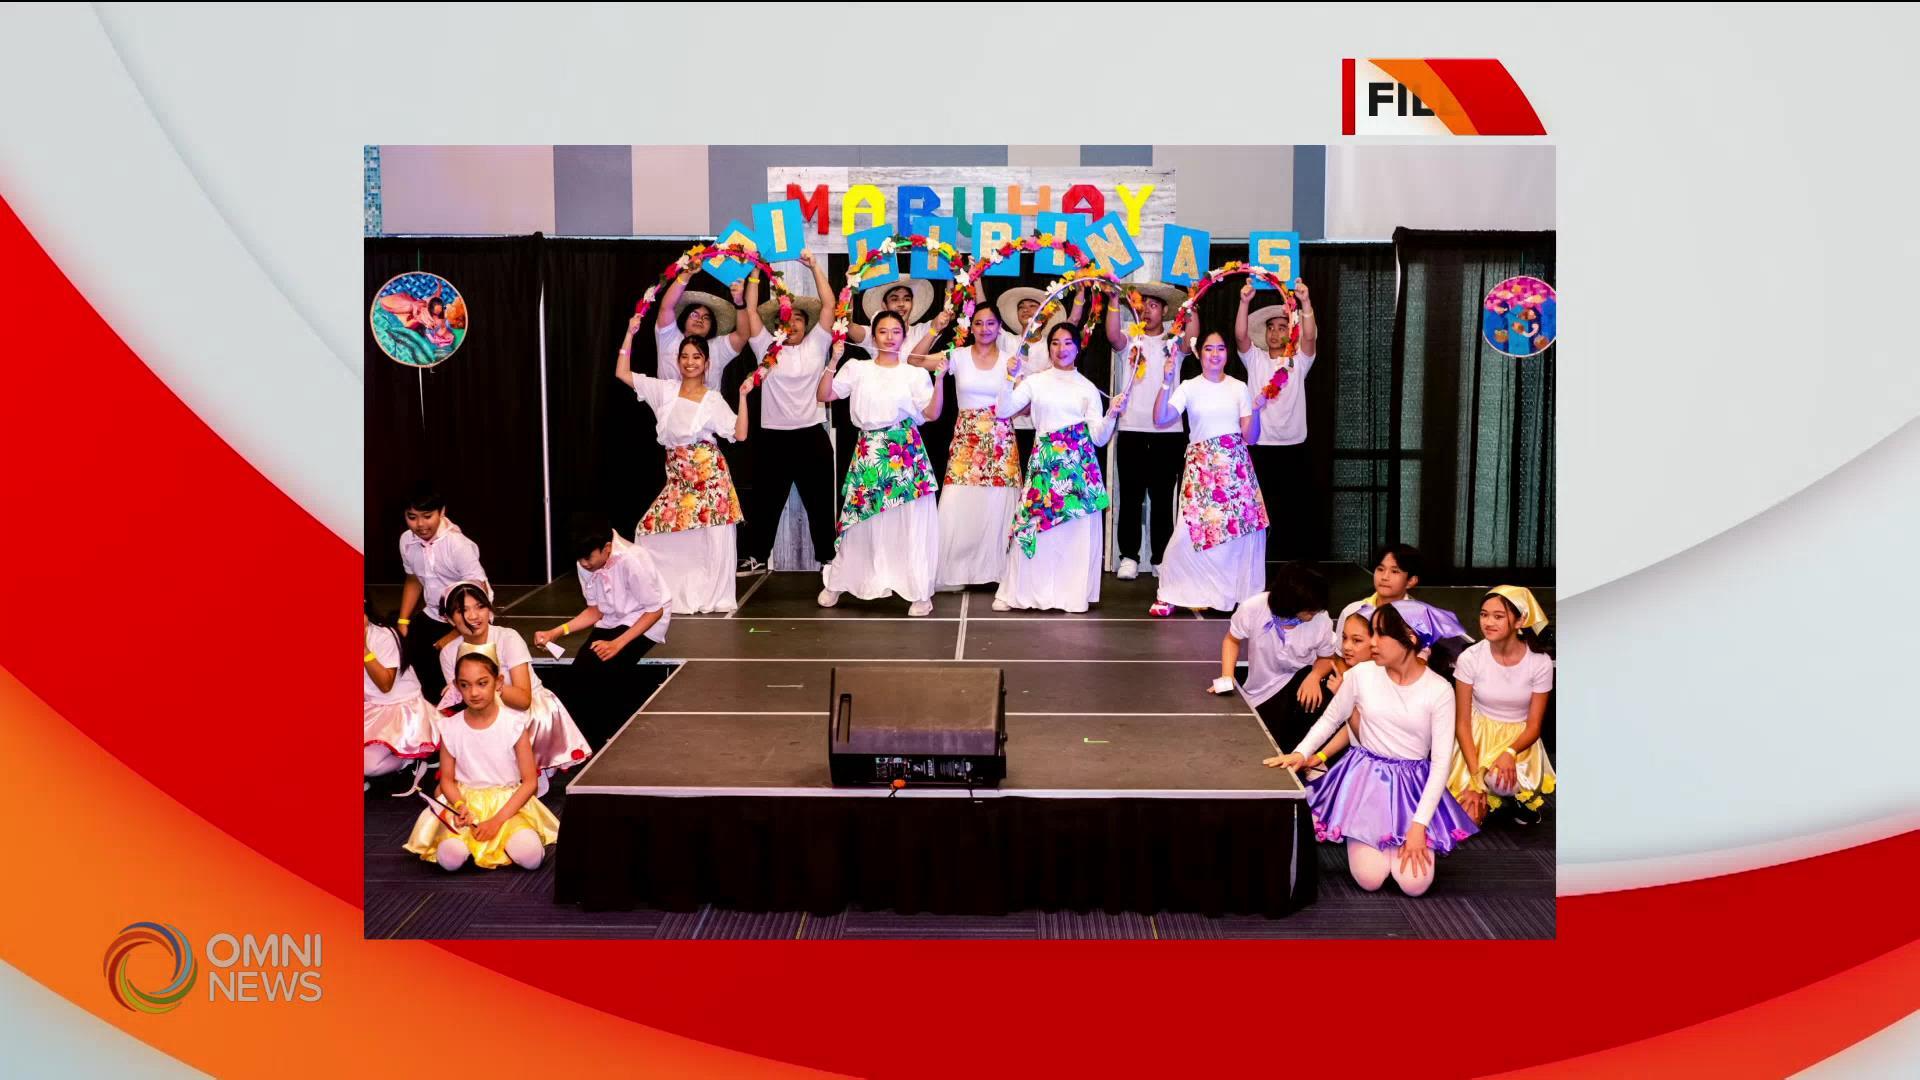 PEIsta Kultura 2024, pagdiriwang ng anibersaryo ng Philippine independence sa P.E.I.